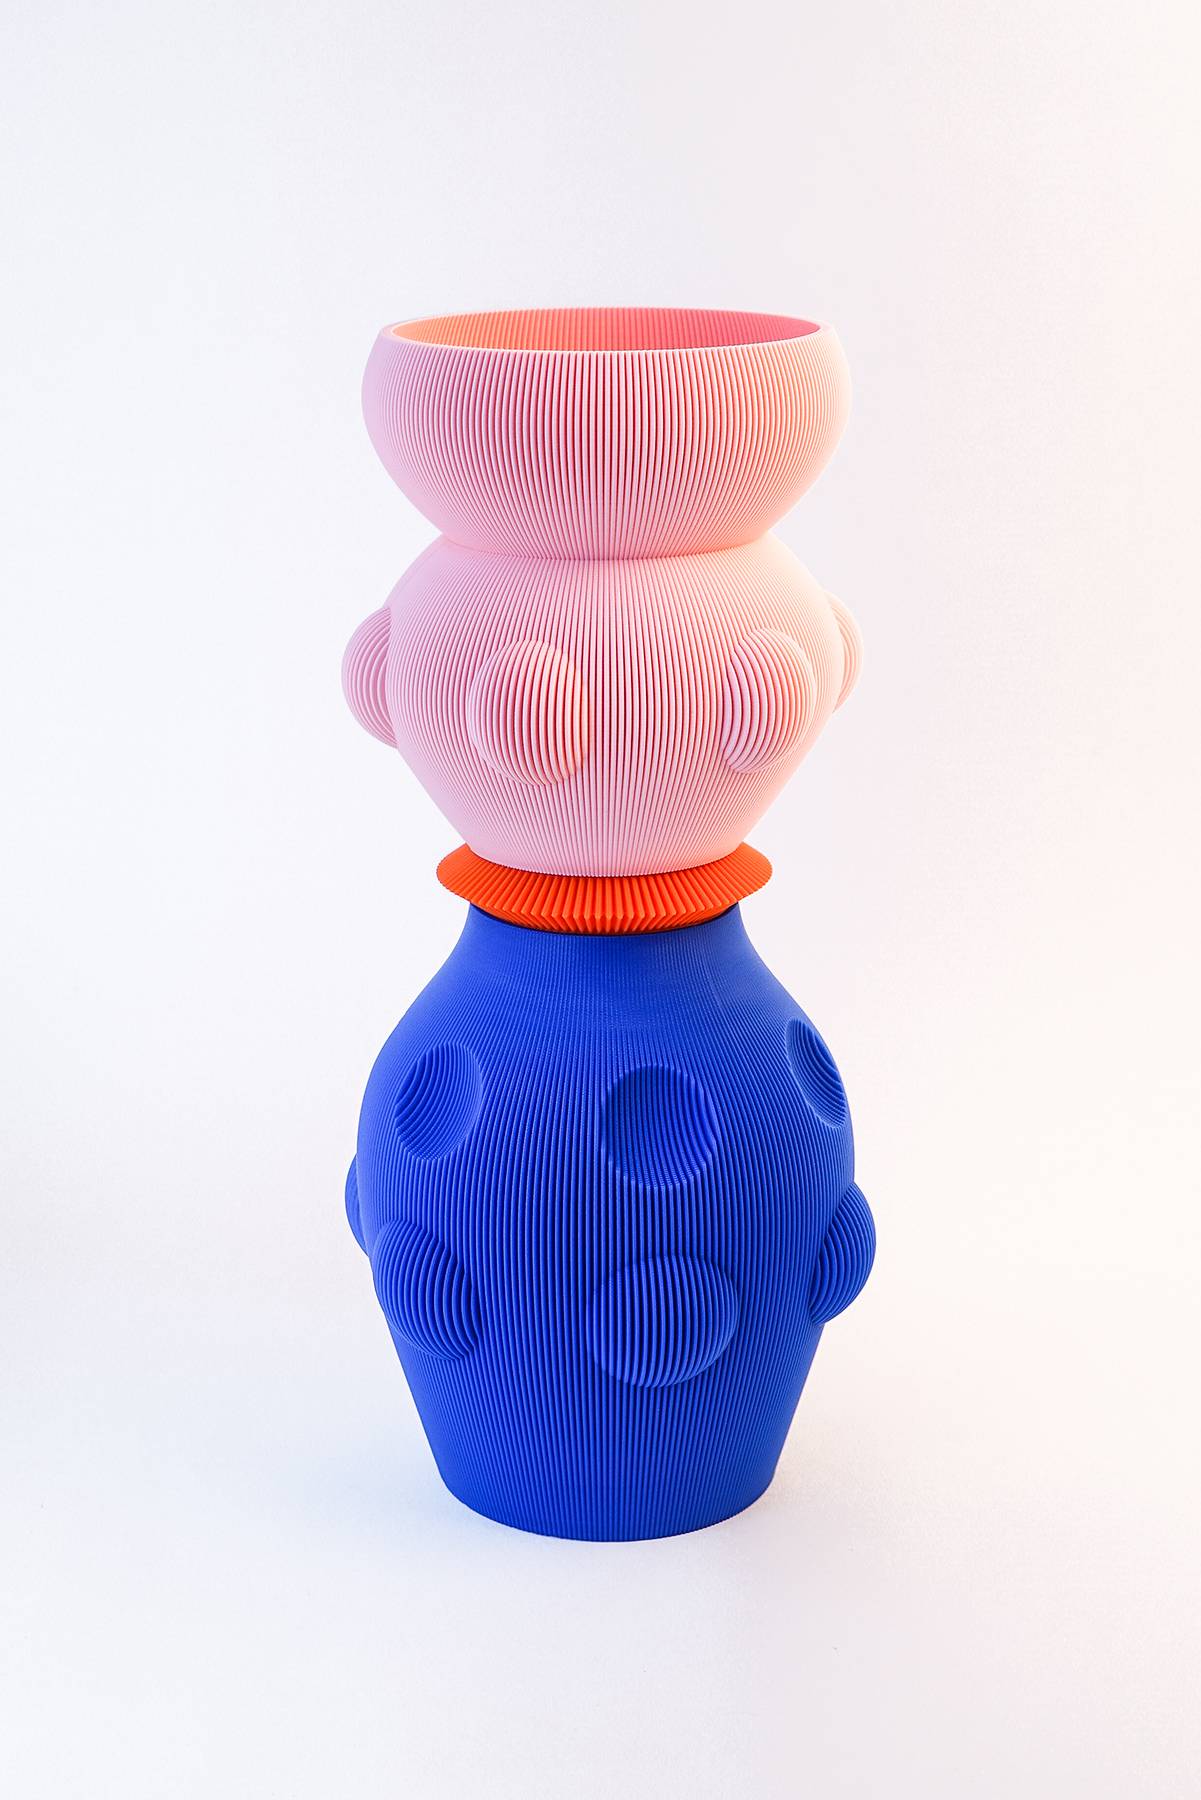 Sensual Objects Vase, UAU Projekt (Fot. materiały prasowe)